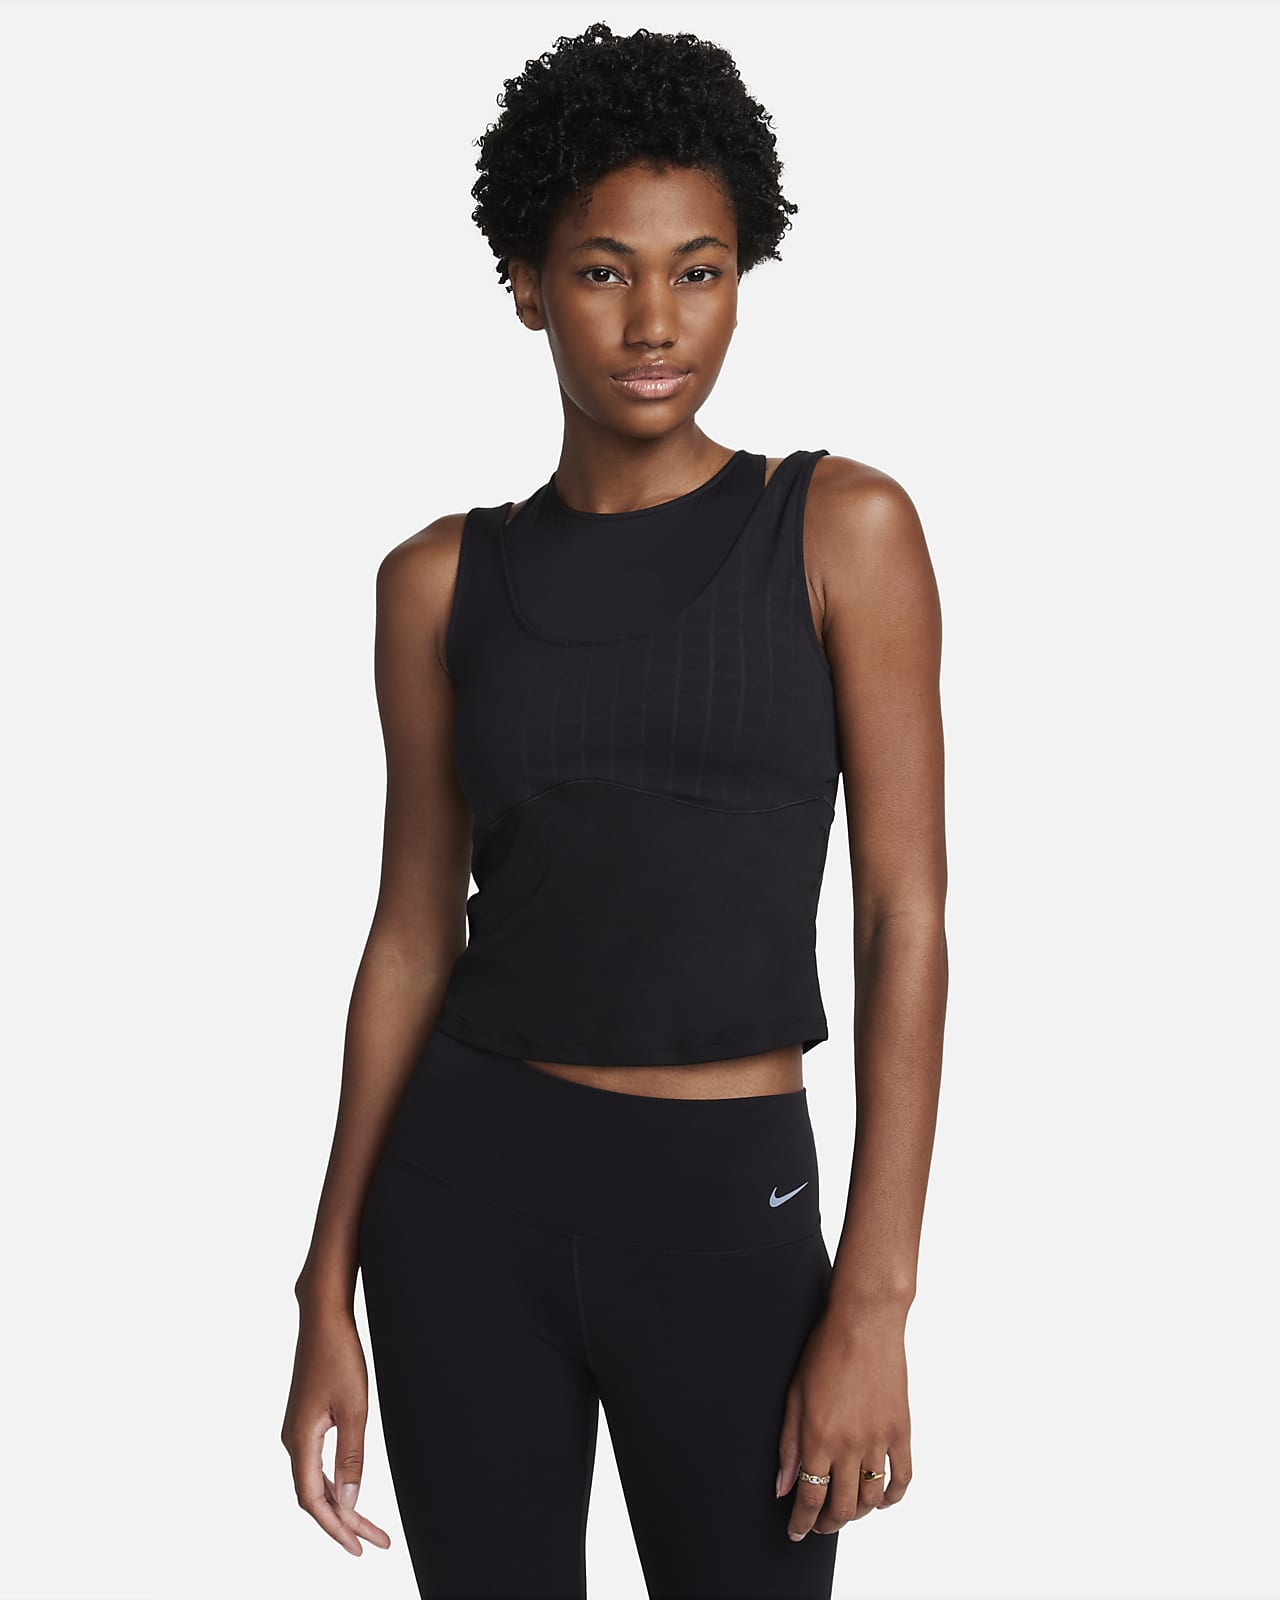 Vêtements & accessoires de yoga pour femme. Nike FR